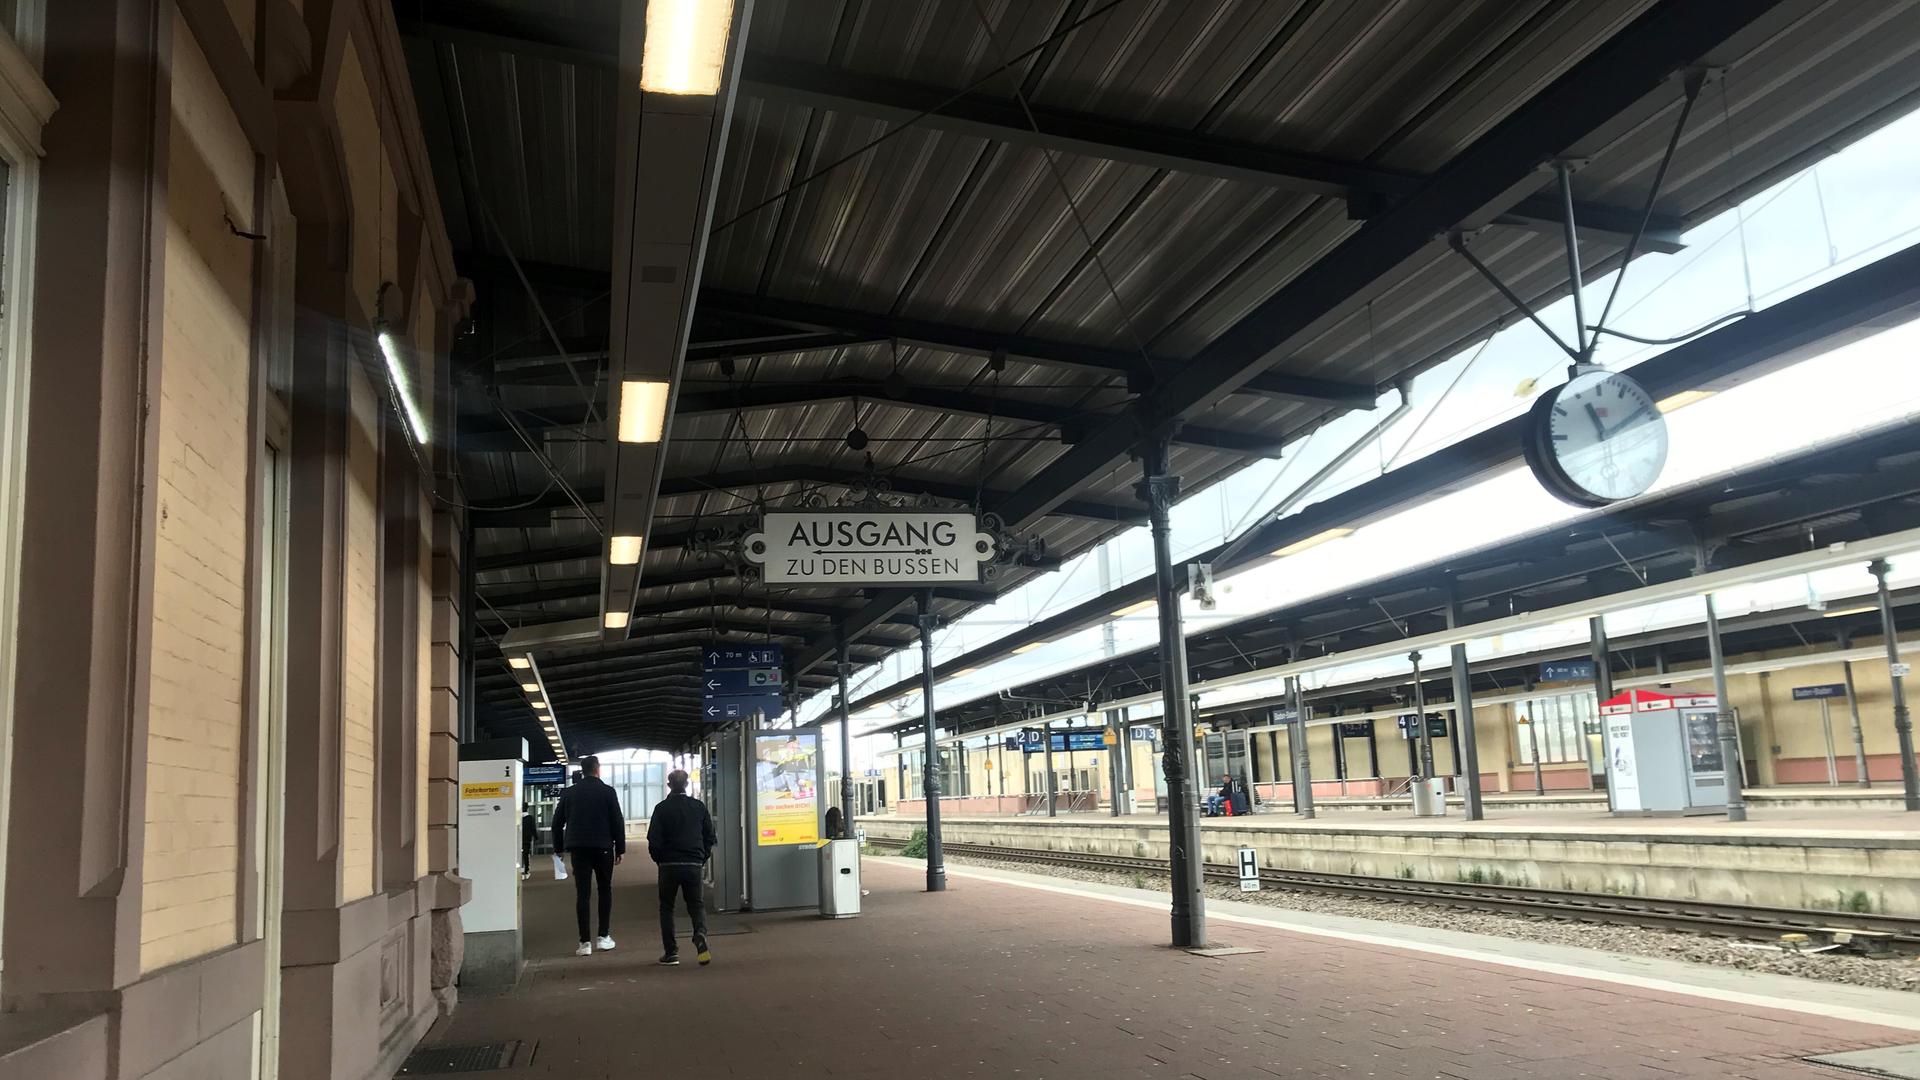 Von wegen Energiesparen: Am Bahnhof von Baden-Baden brennen die Lampen wochenlang auch tagsüber. Das ärgert die Leser.